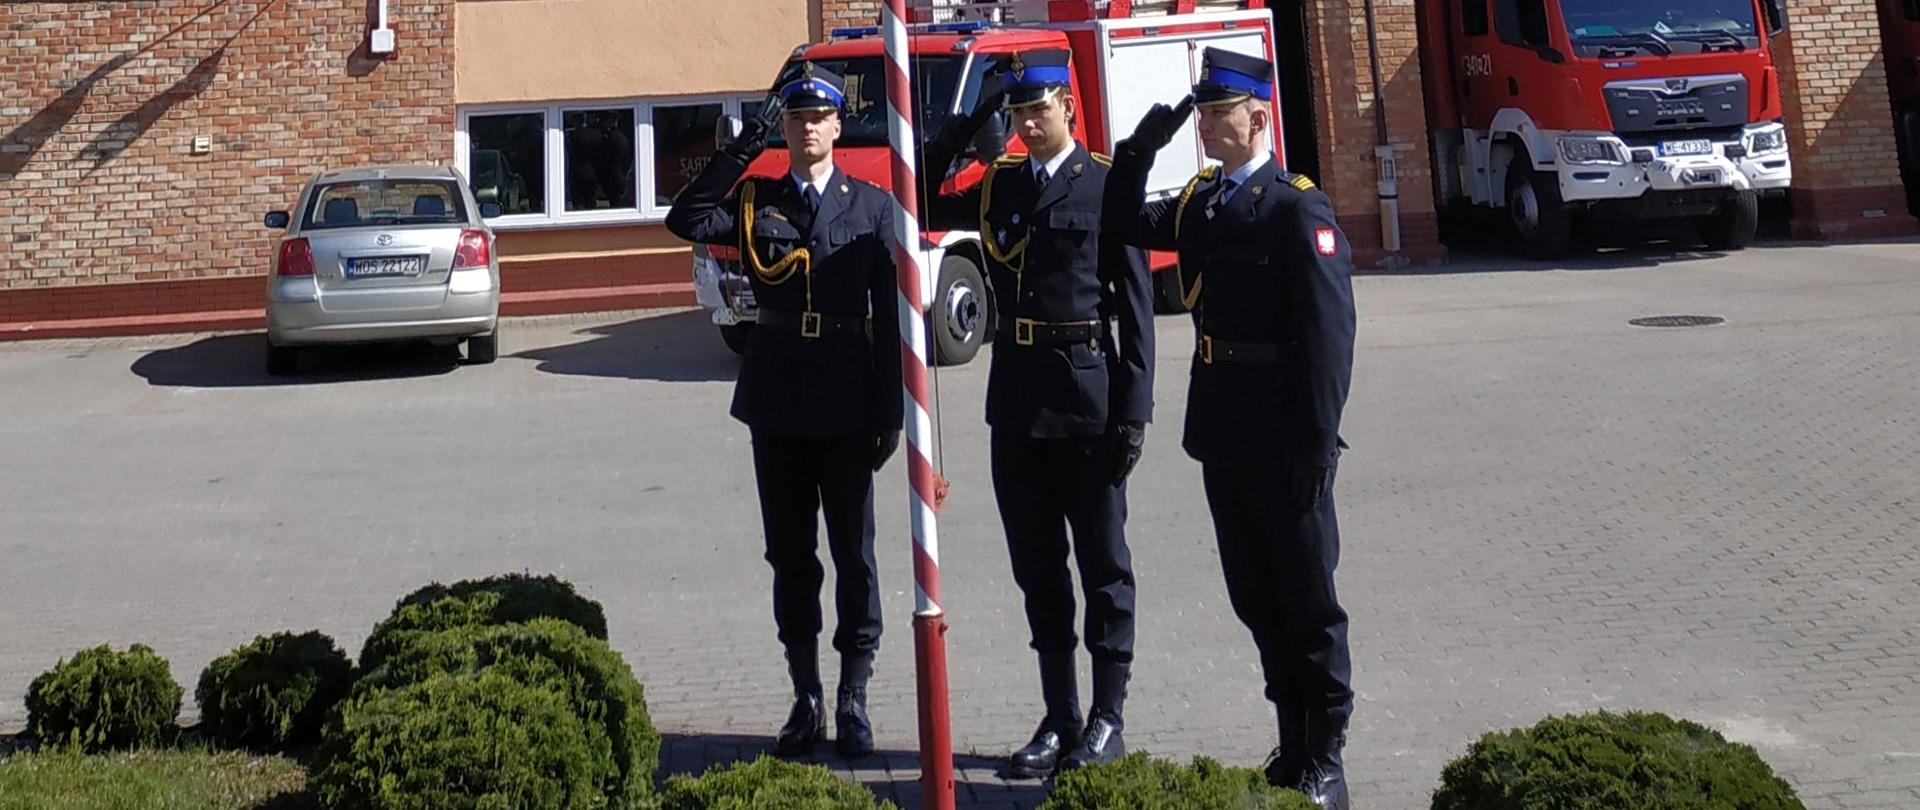 Dzień Flagi Rzeczypospolitej Polskiej - funkcjonariusze oddają honory przy Fladze RP na maszcie